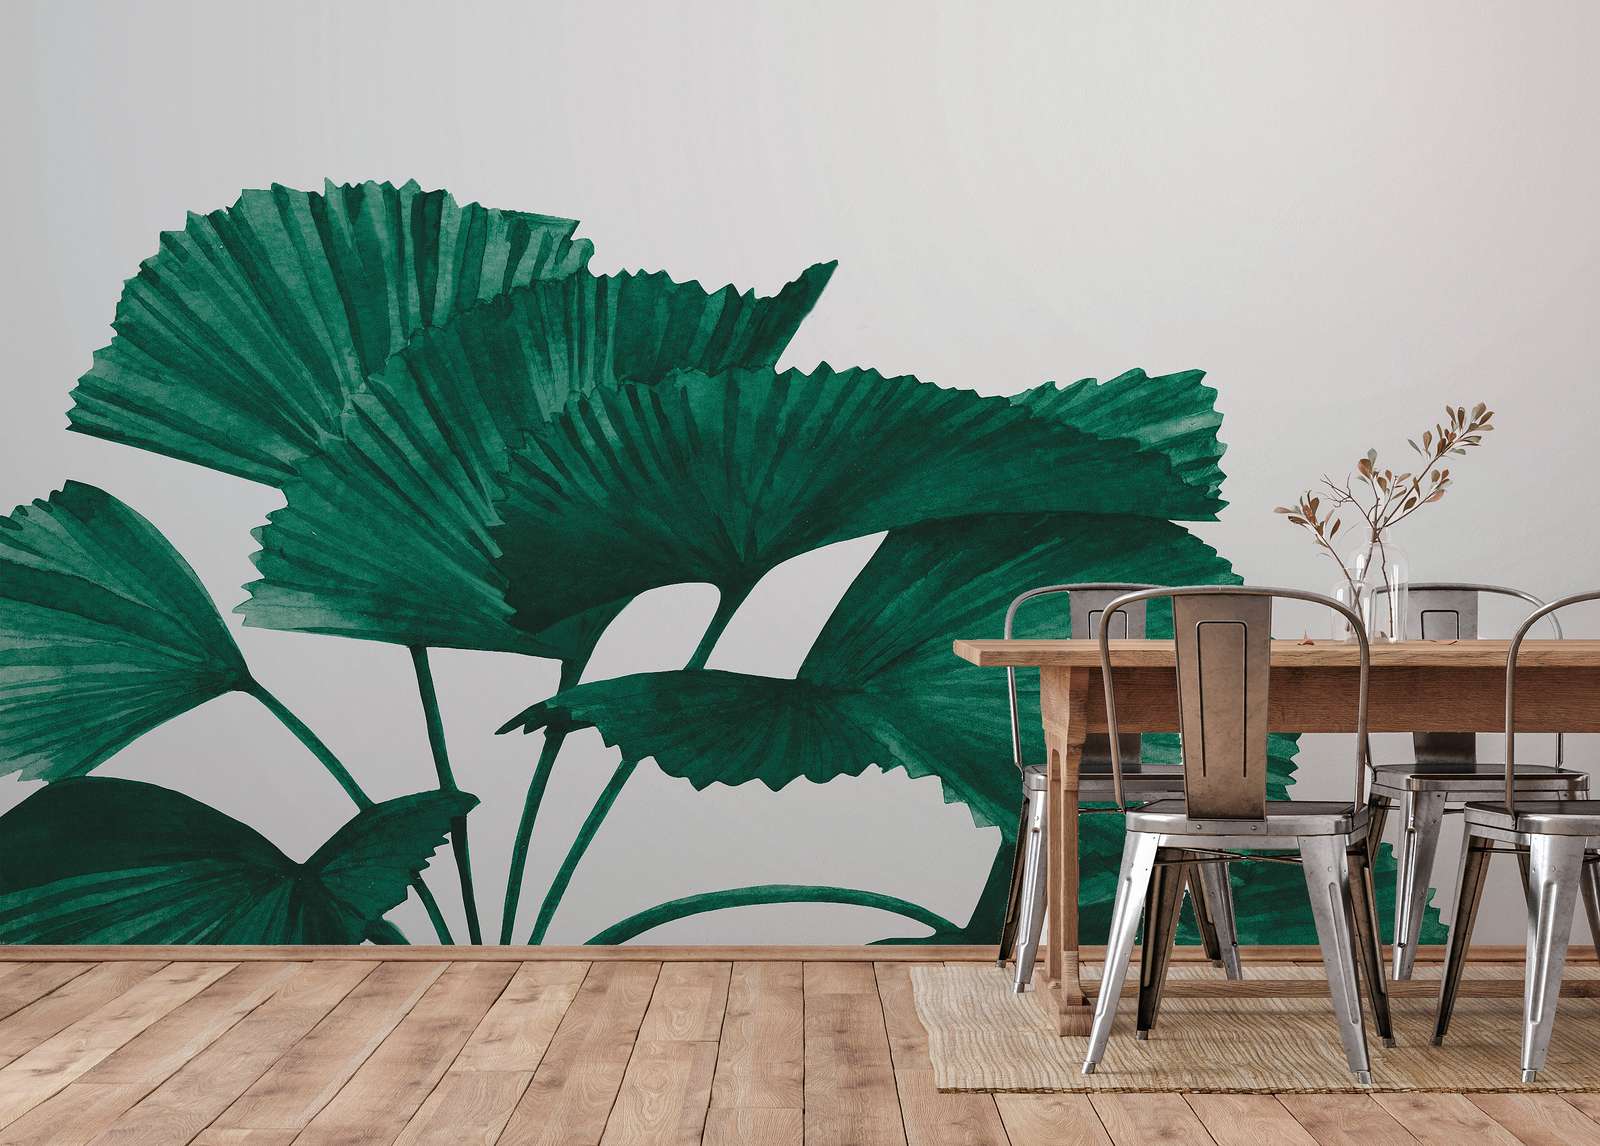             Papier peint avec grandes feuilles de palmier à rayons - vert, gris
        